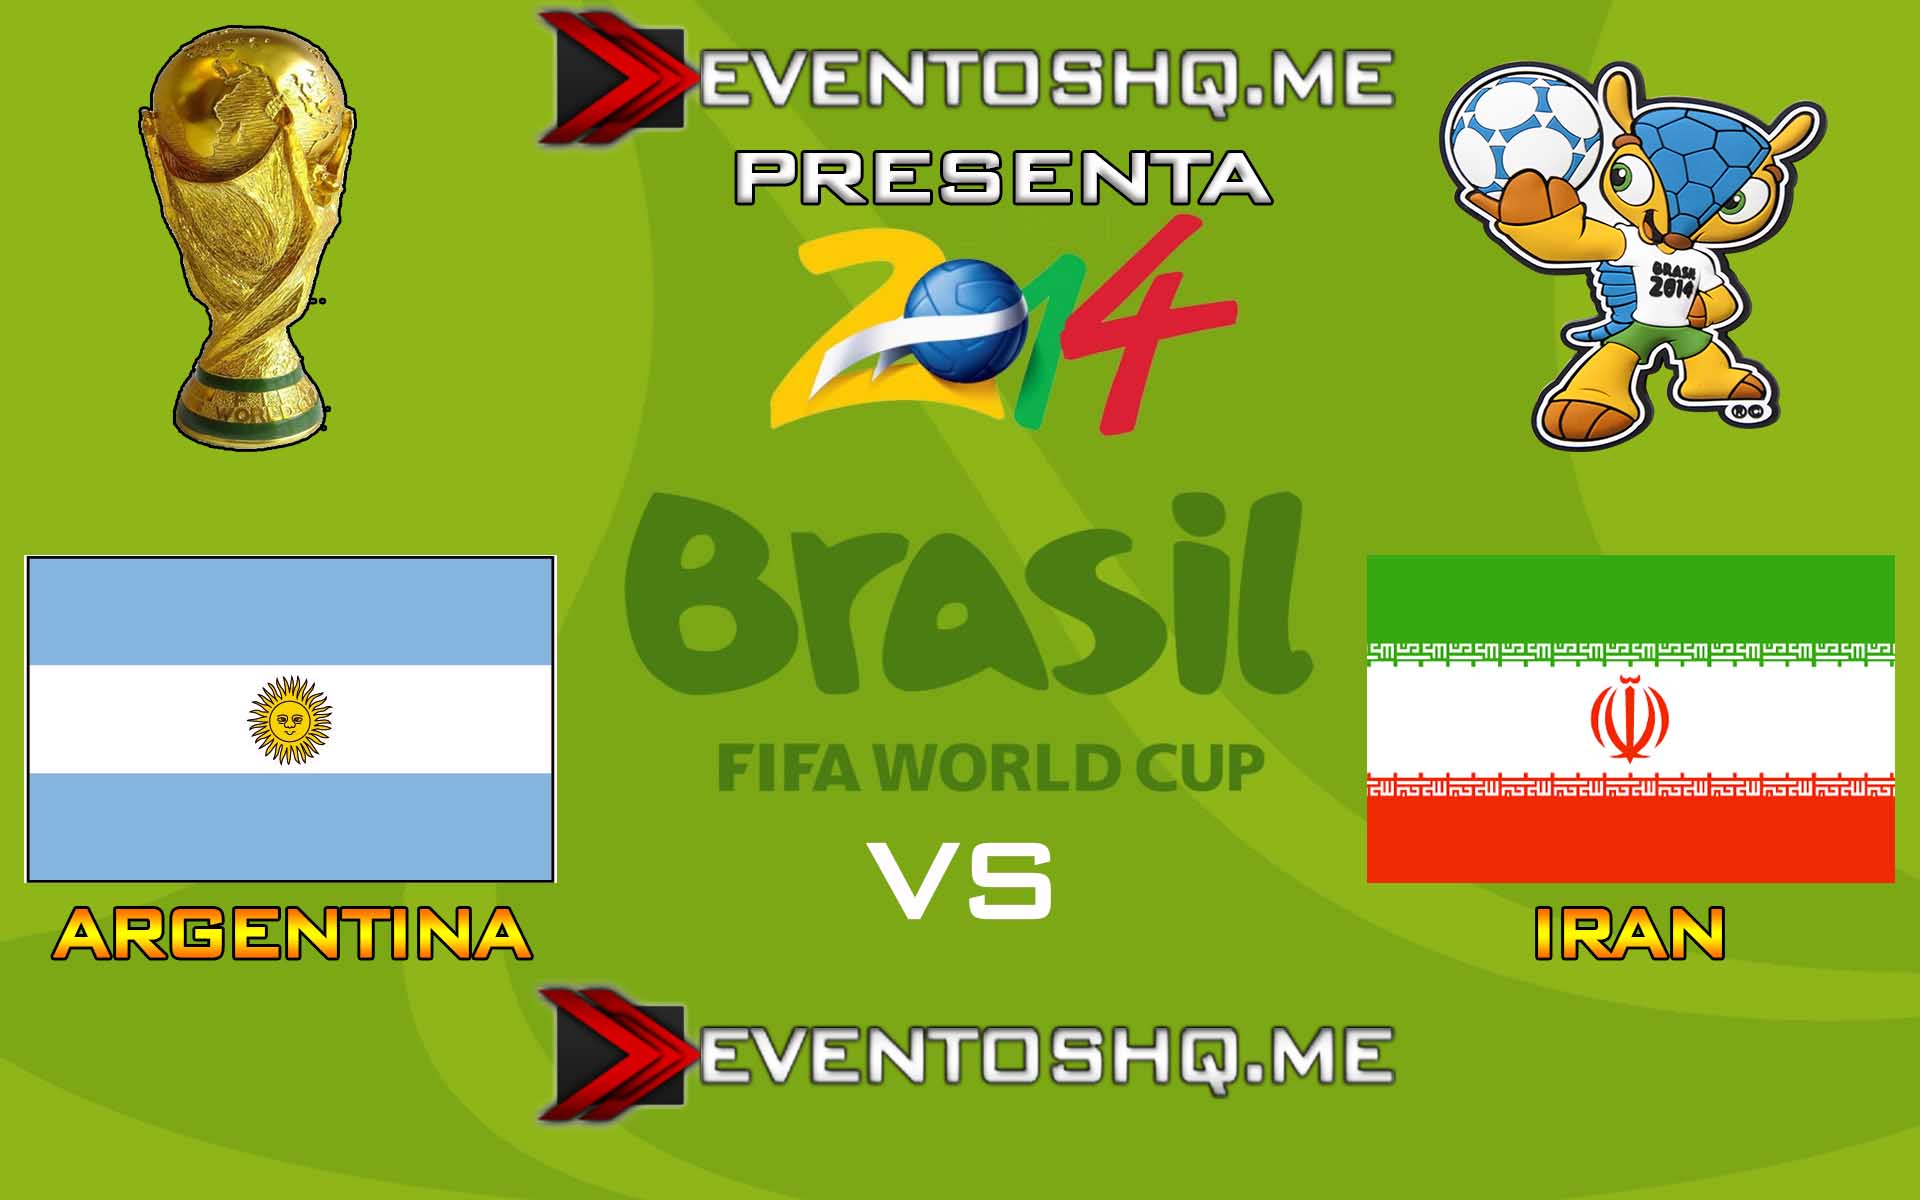 Ver en Vivo Argentina vs Iran Mundial Brasil 2014 www.eventoshq.me